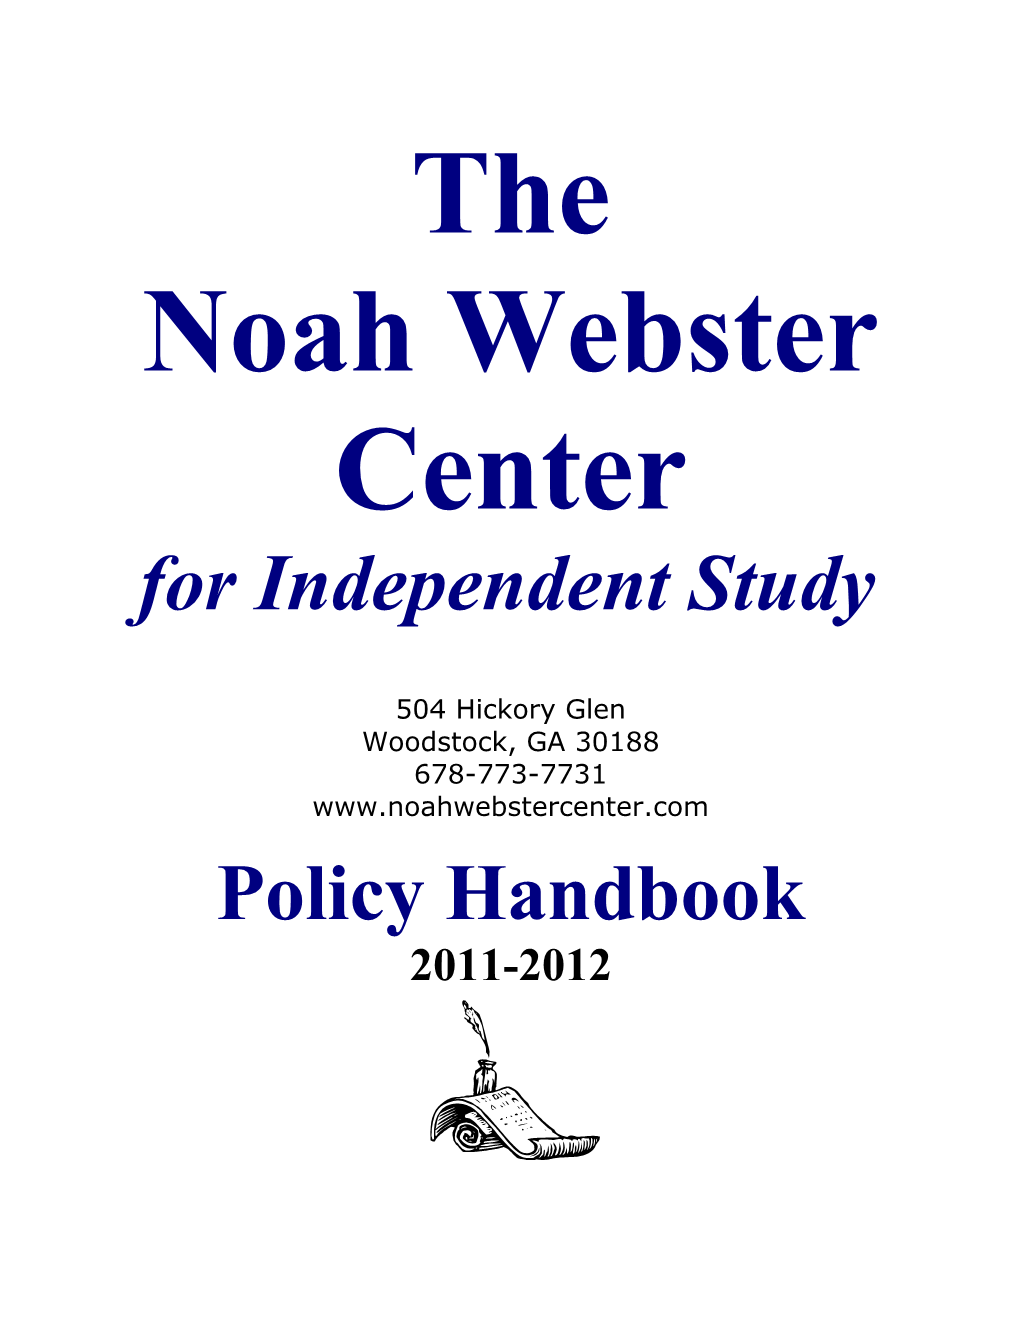 Noah Webster Center